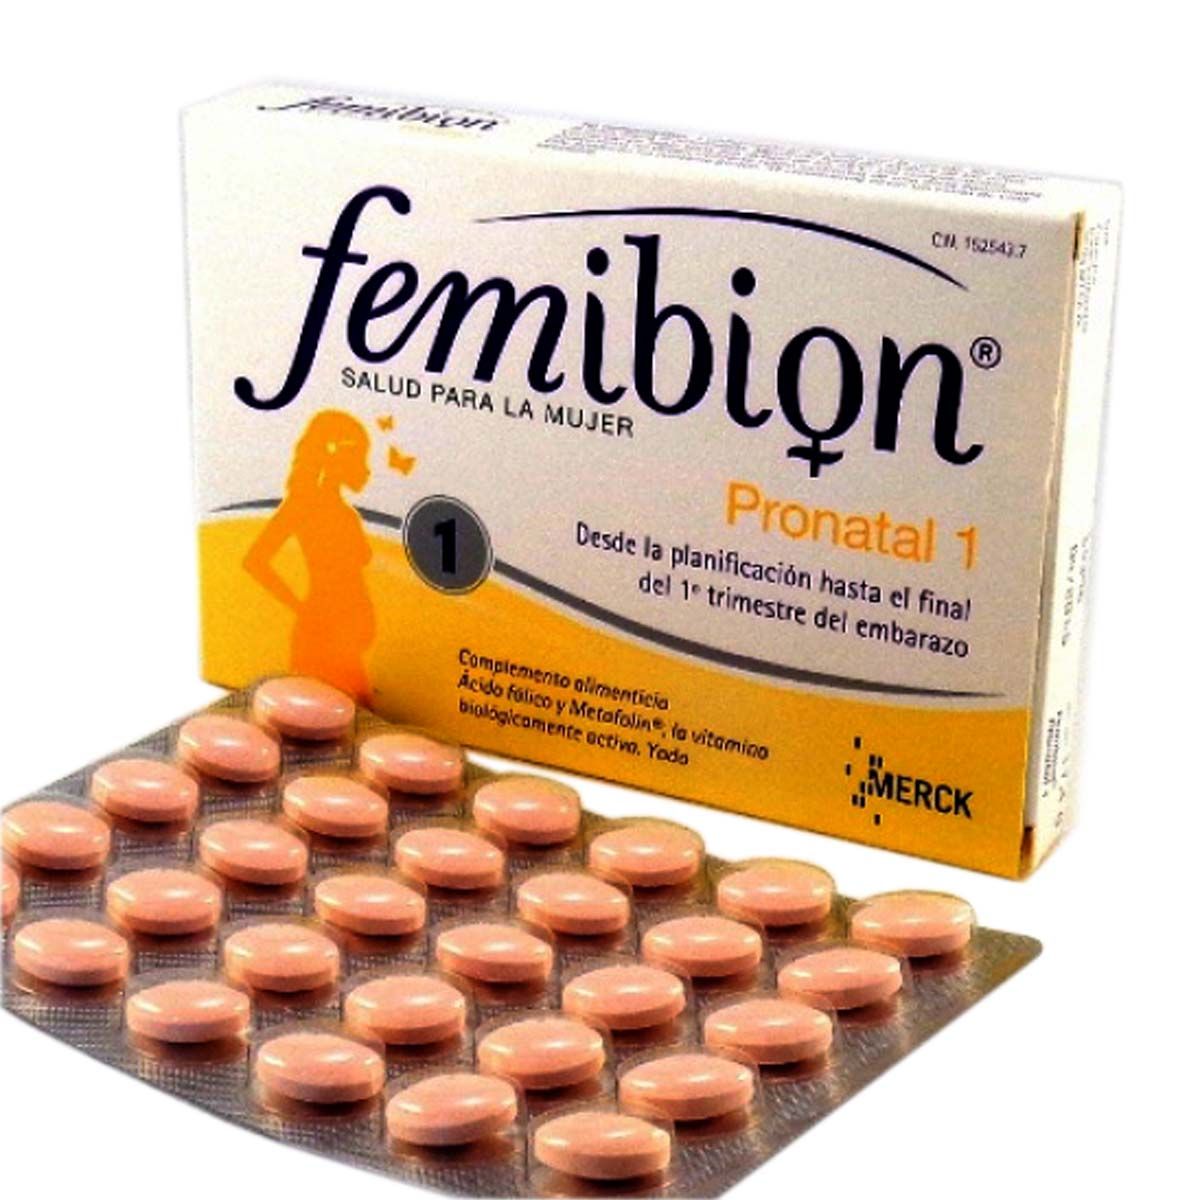 Femibion 1 pronatal (28 uds): Planificación del embarazo